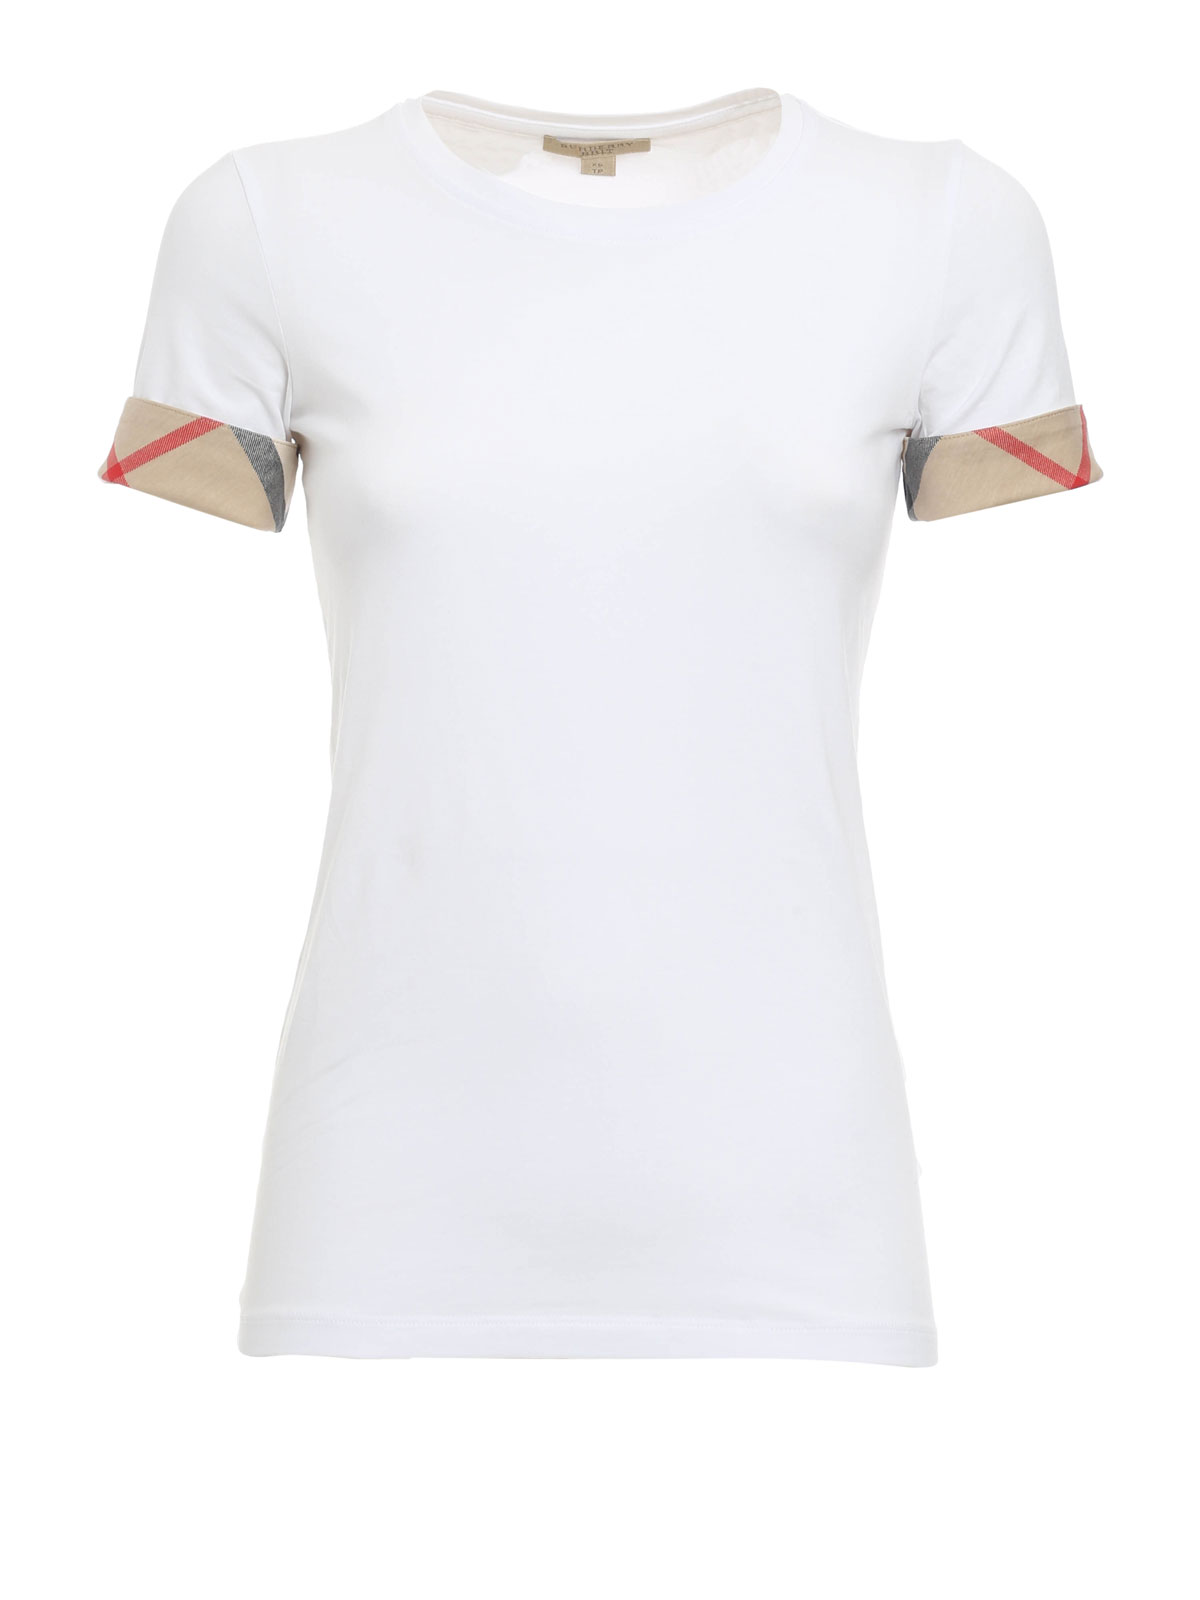 Camisetas - Camiseta Blanca Para Mujer 38773171 iKRIX.com